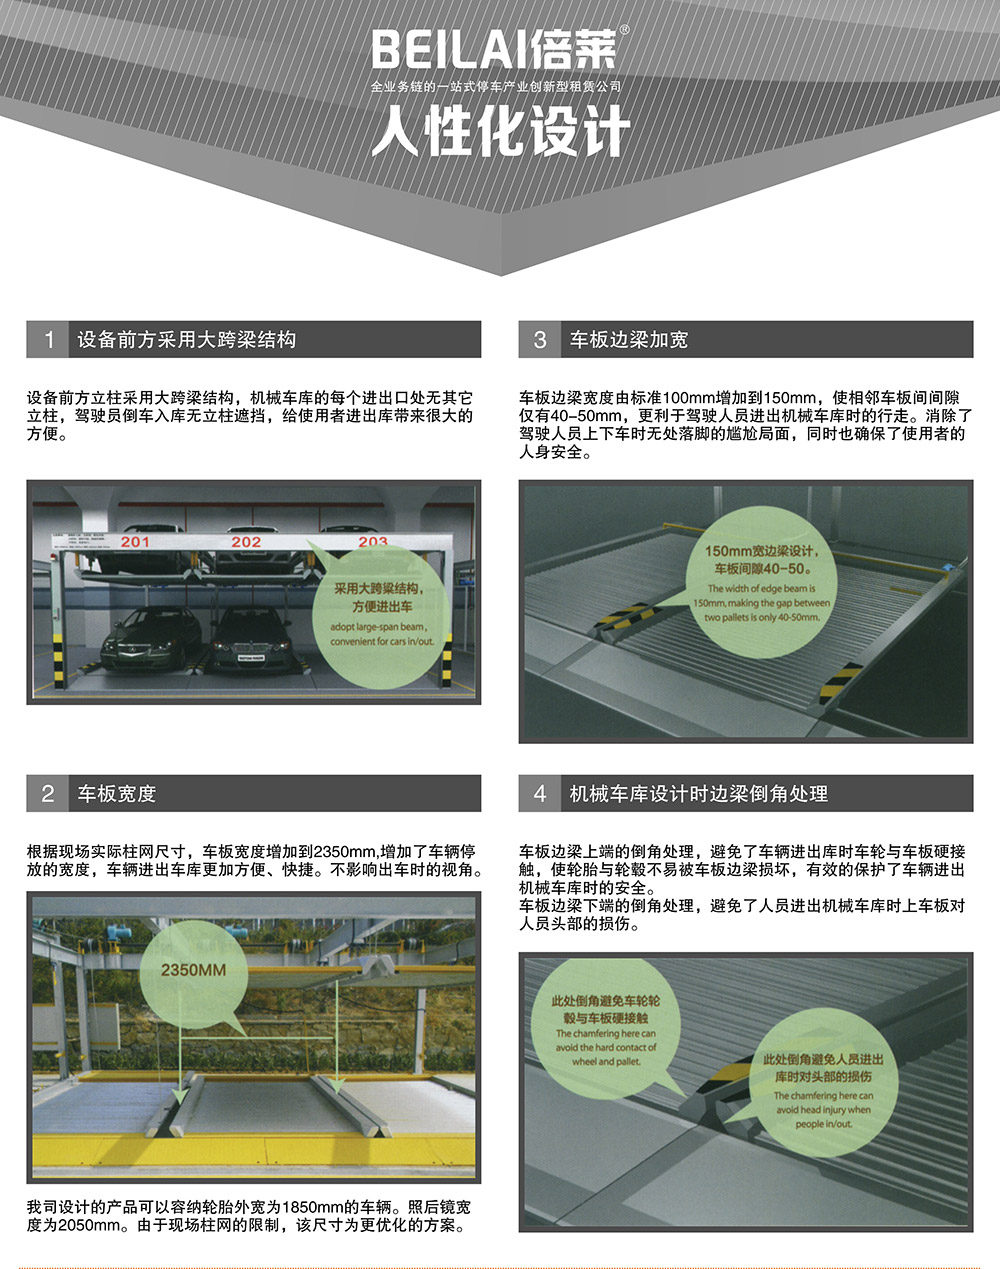 成都重庆四至六层PSH4-6升降横移式立体车库设备人性化设计.jpg